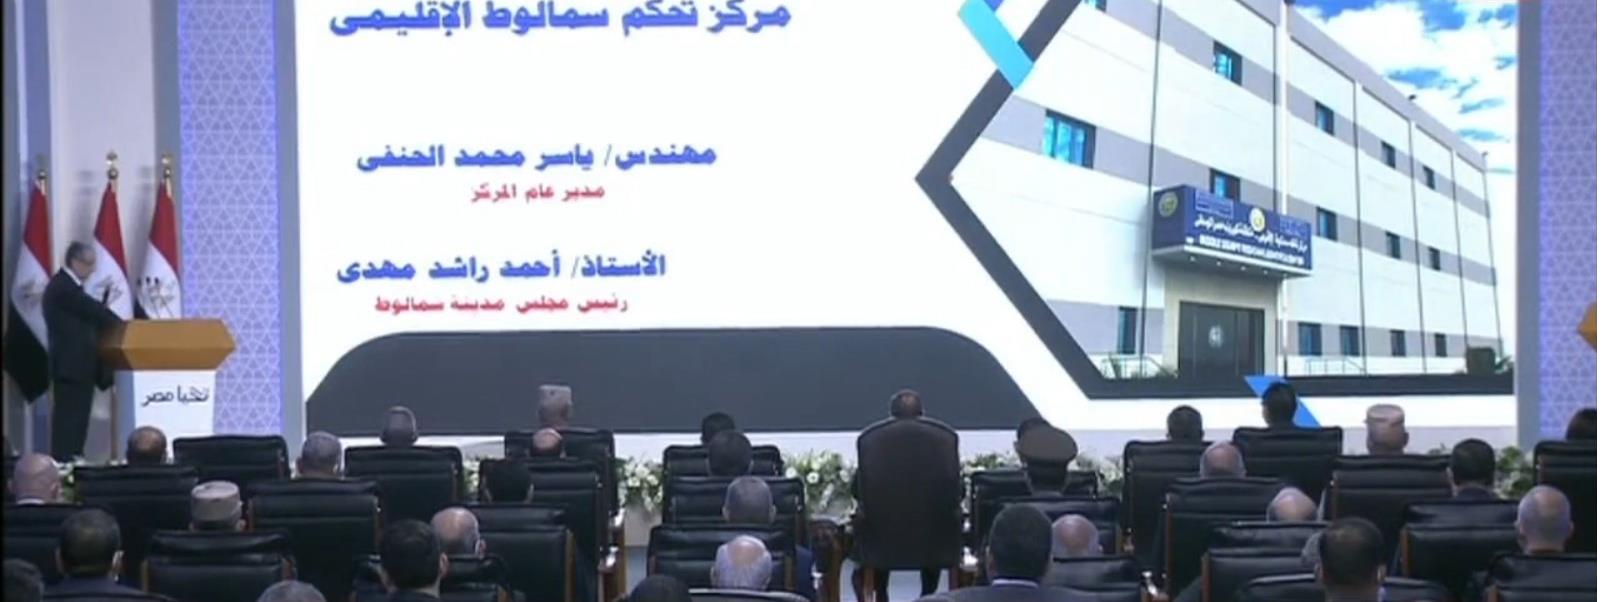 رئيس الجمهورية يشهد افتتاح مركز التحكم الإقليمي بمركز سمالوط عبر الفيديو كونفرنس